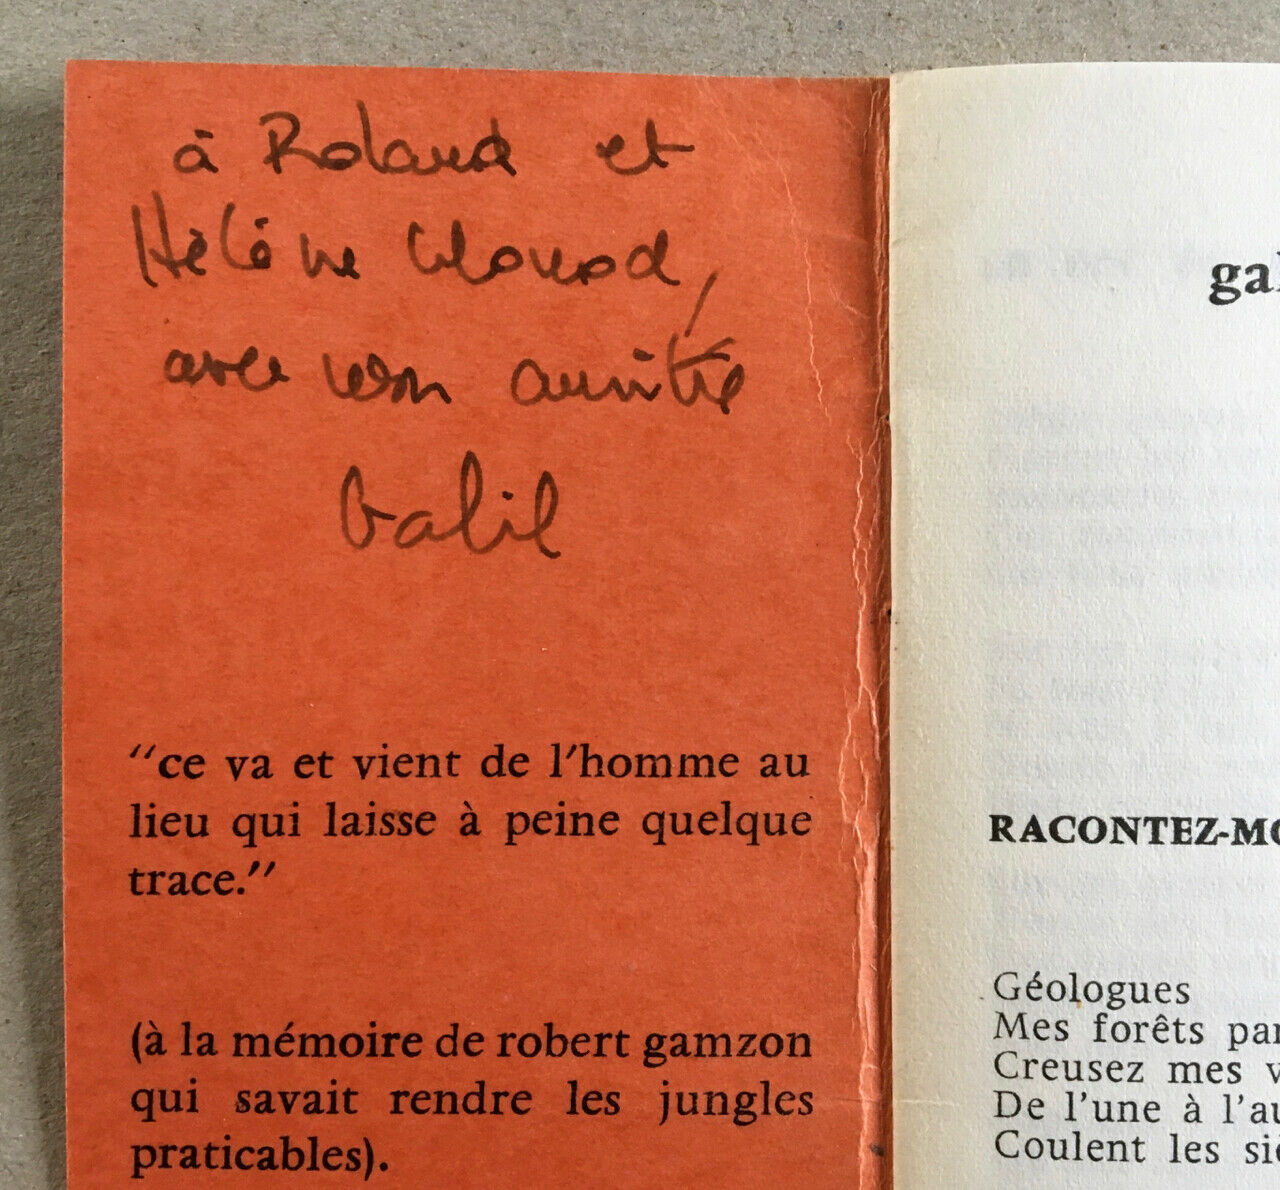 [Liliane Atlan] Galil — Le Maître-mur — Action poétique 18 — envoi — 1964.